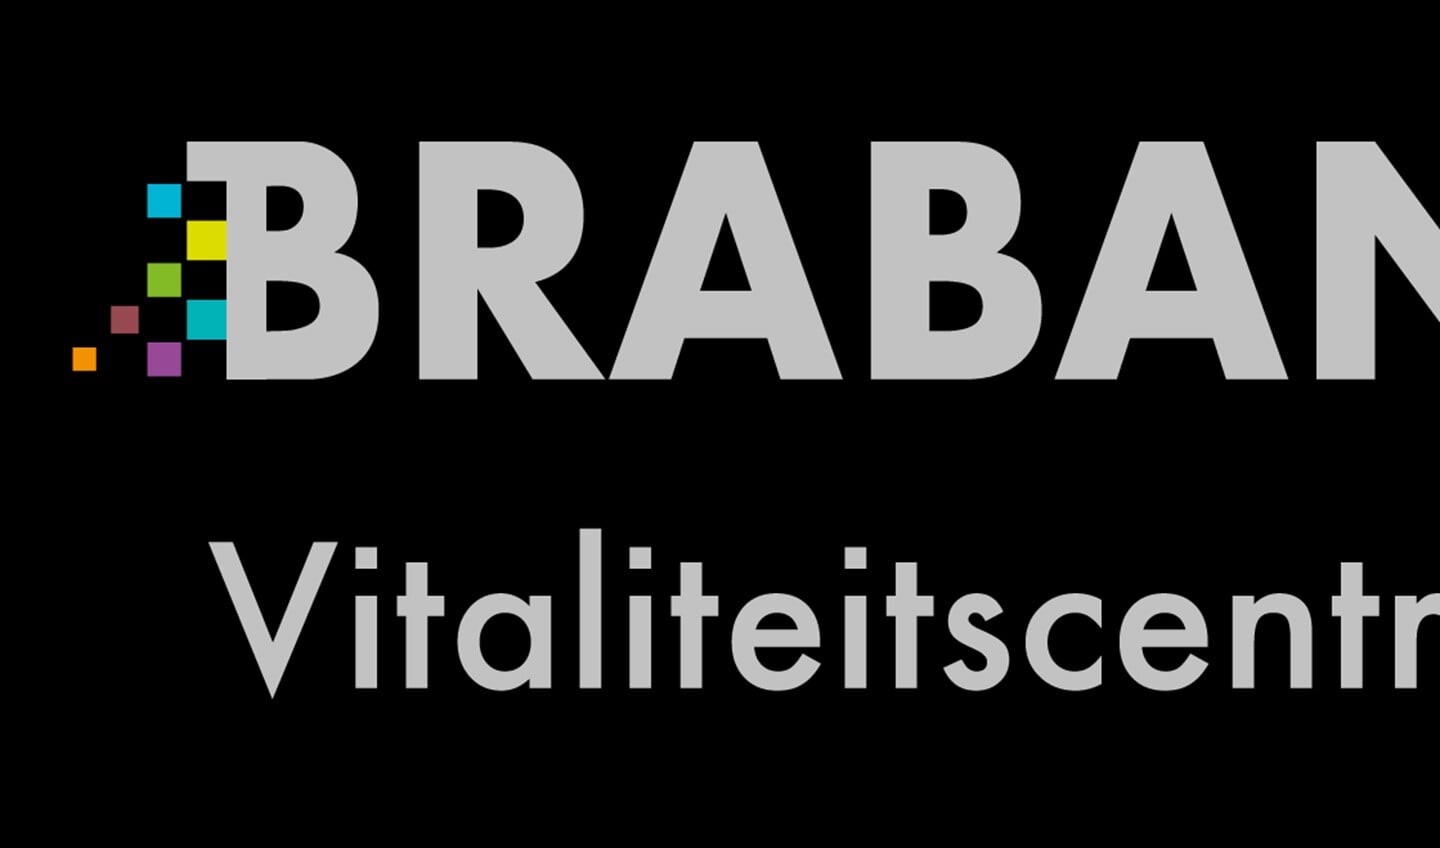 Het logo van Vitaliteitscentrum Brabant.